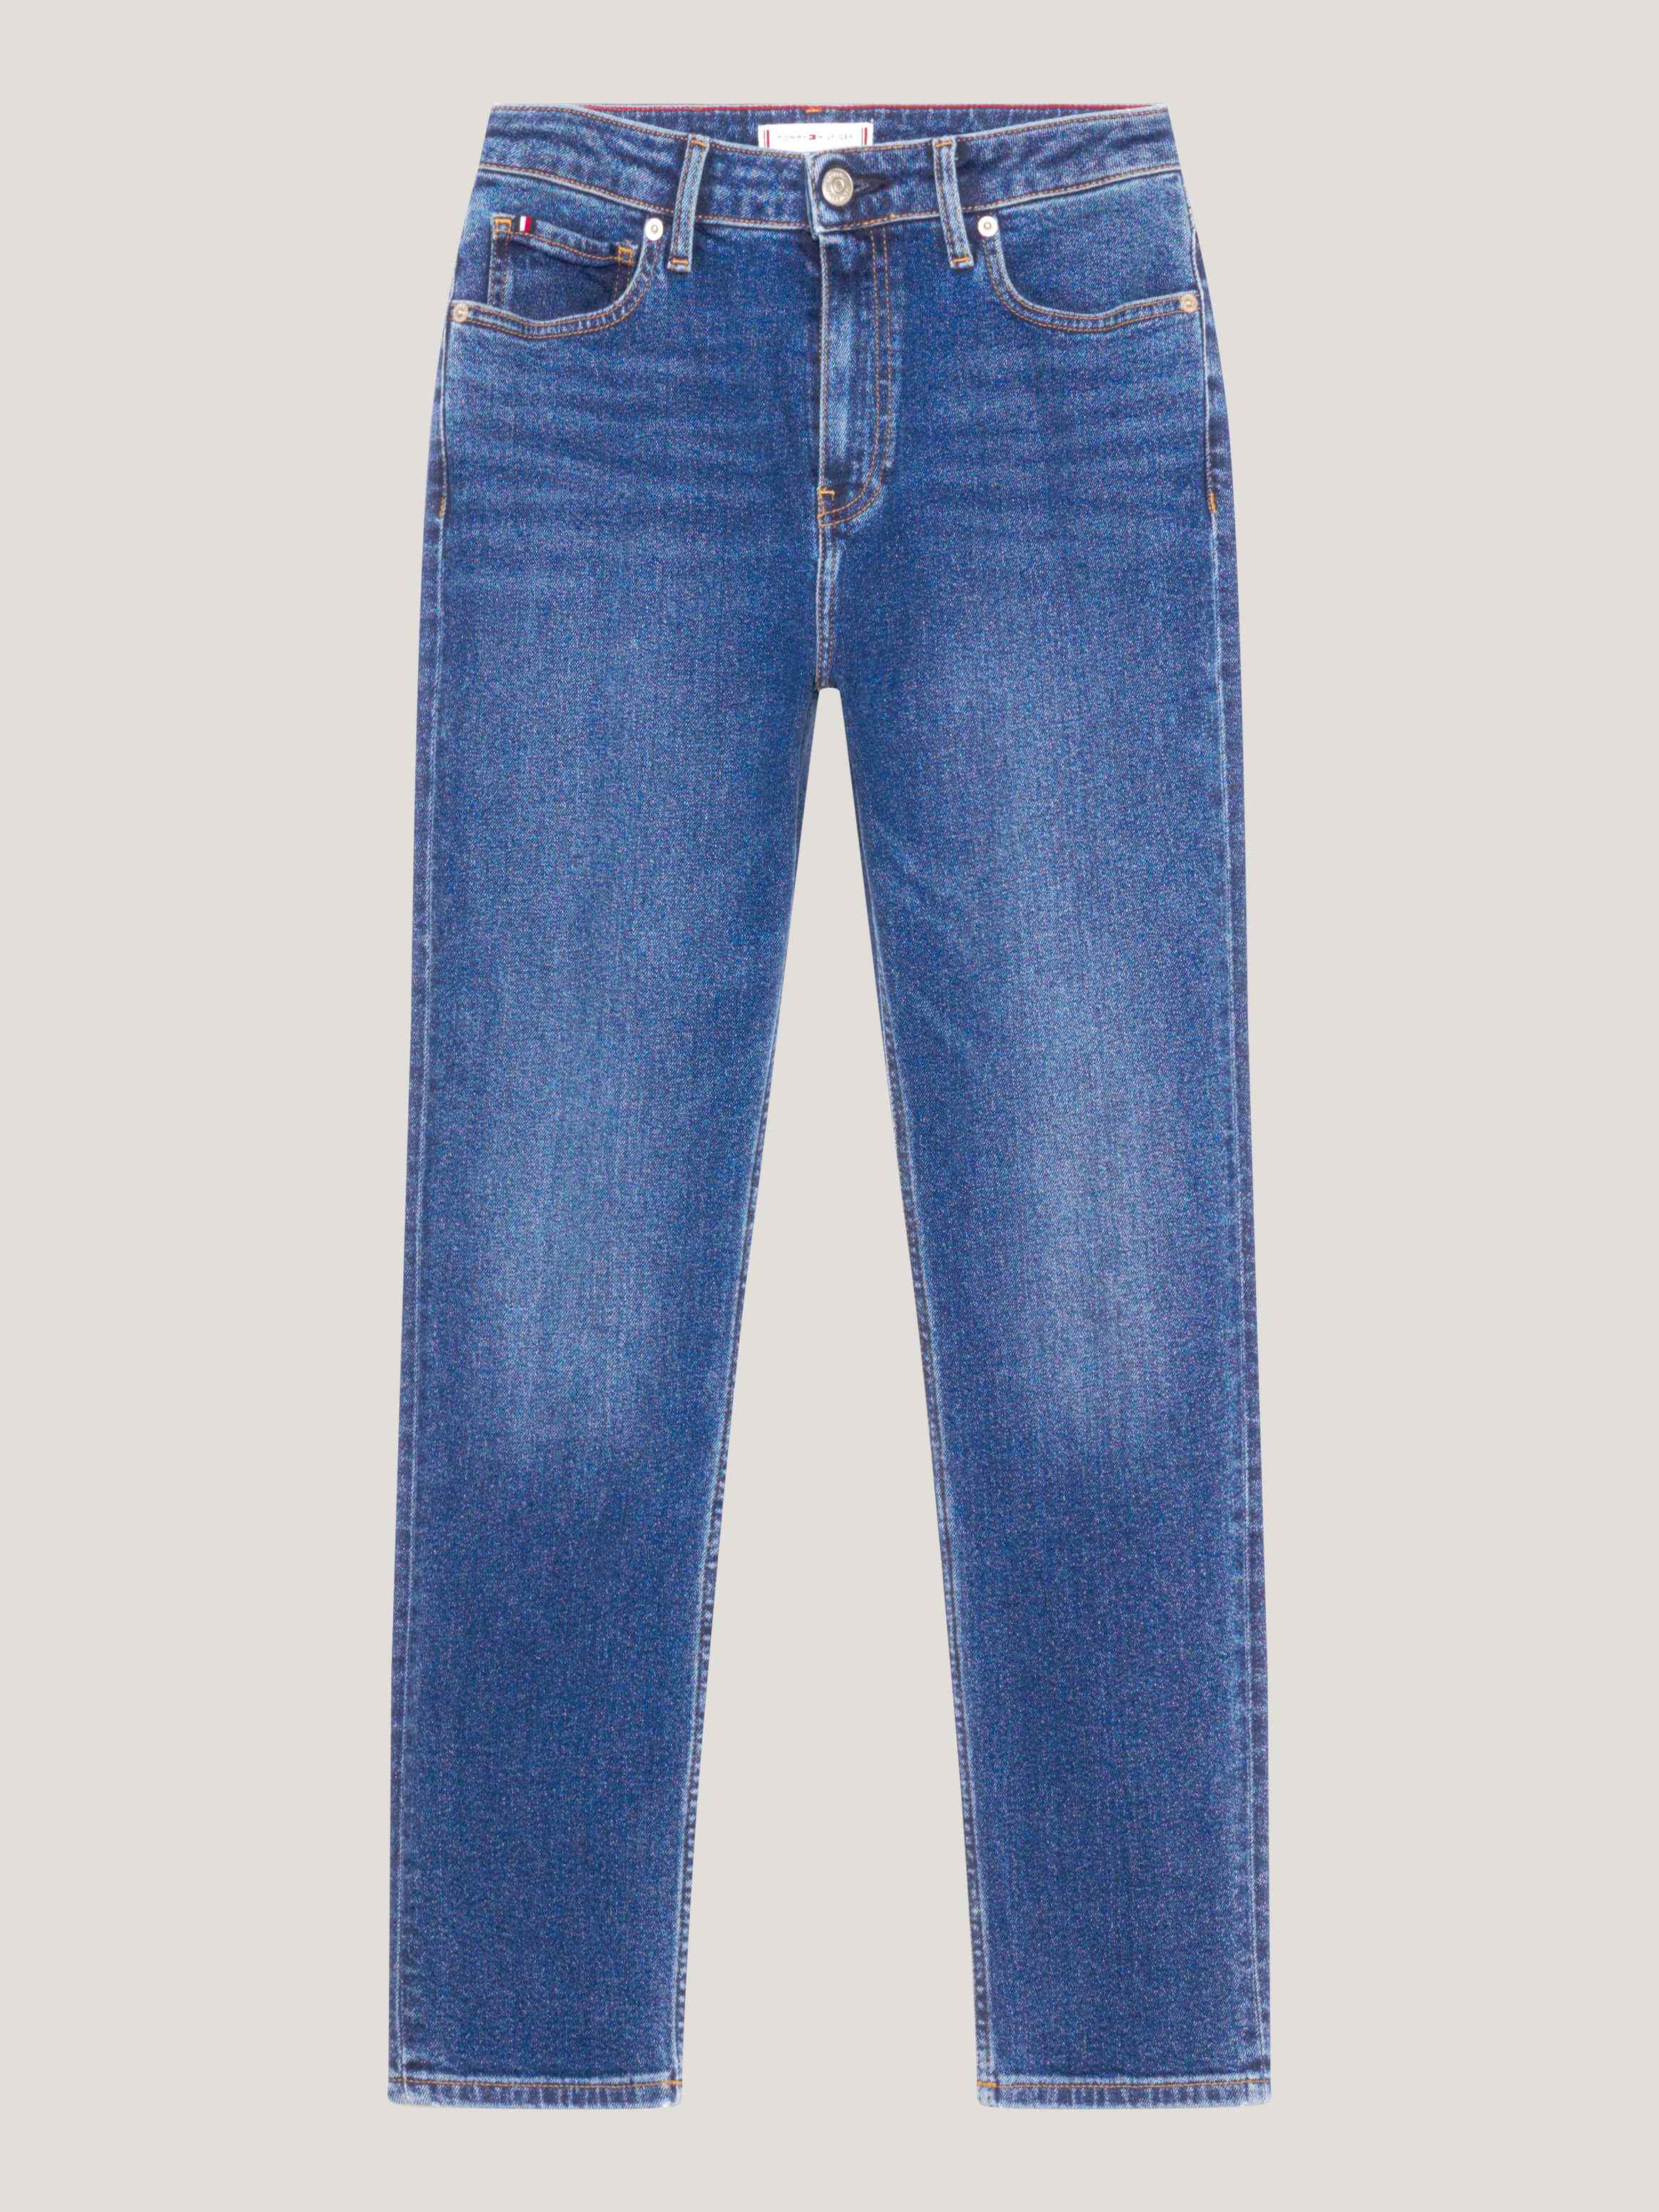 Jeans ajustados de talle alto mujer Tommy Hilfiger